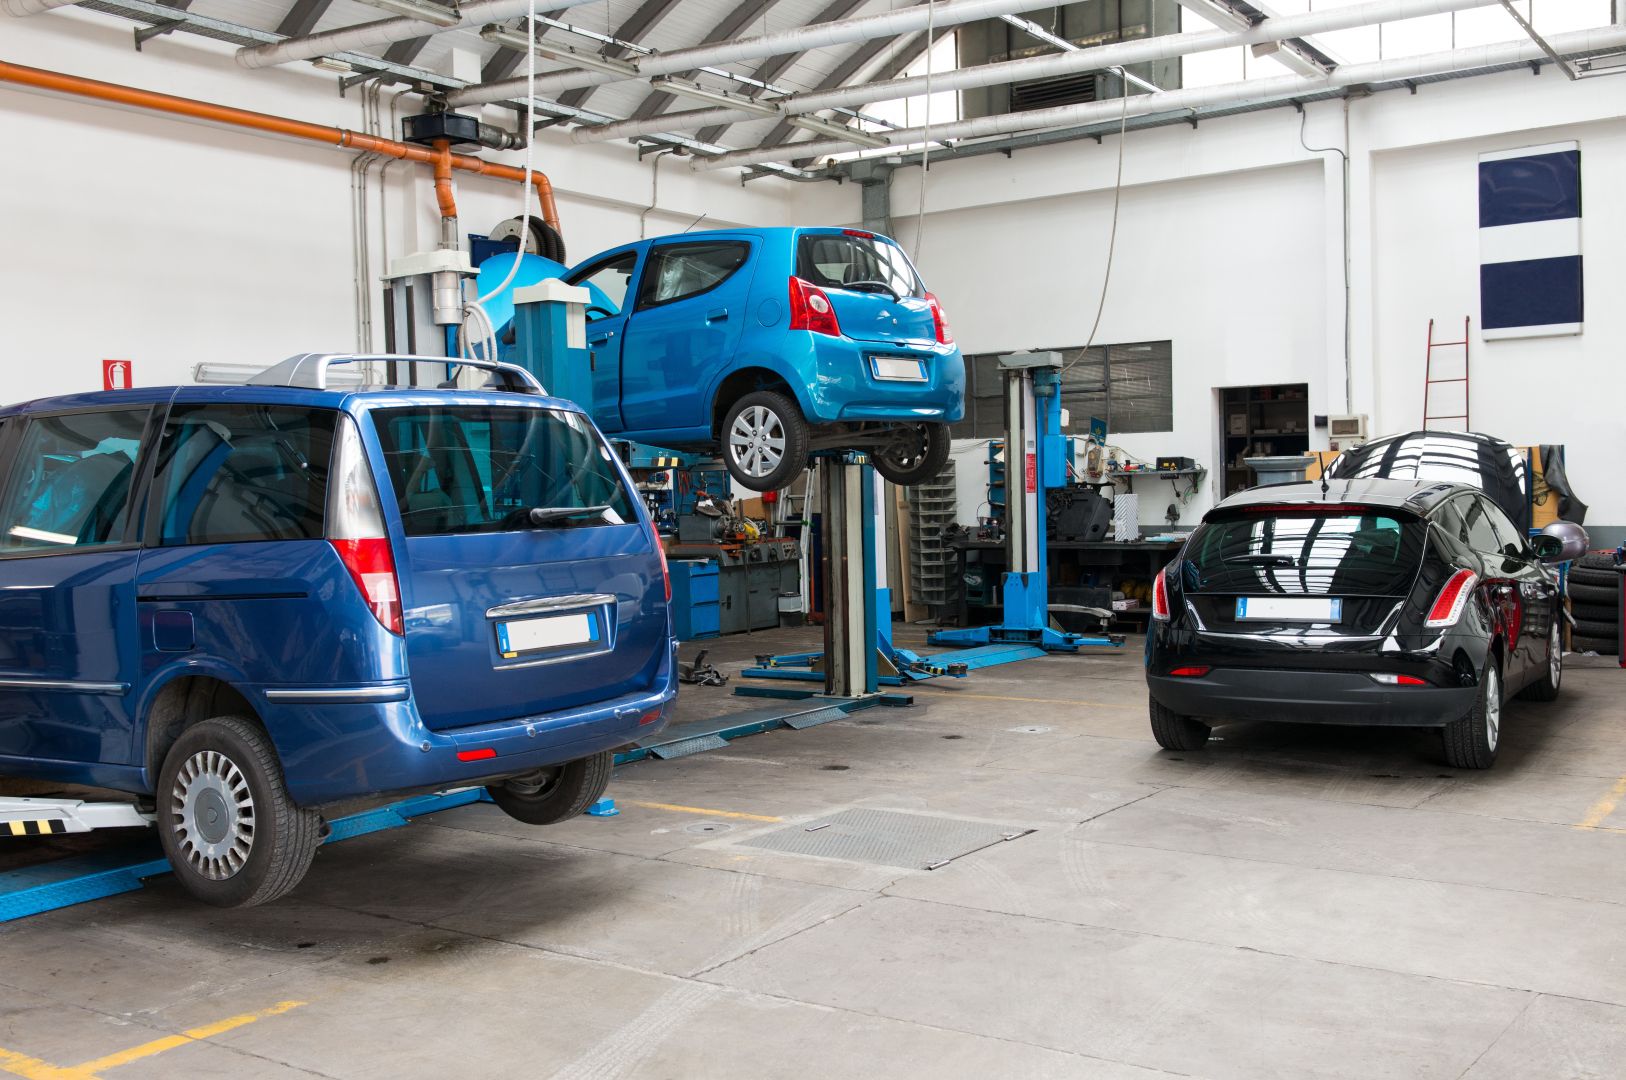 Poptávka na přestavbu na pohon LPG u vozu Volkswagen Golf (Osobní a užitkové vozy) - Vsetín